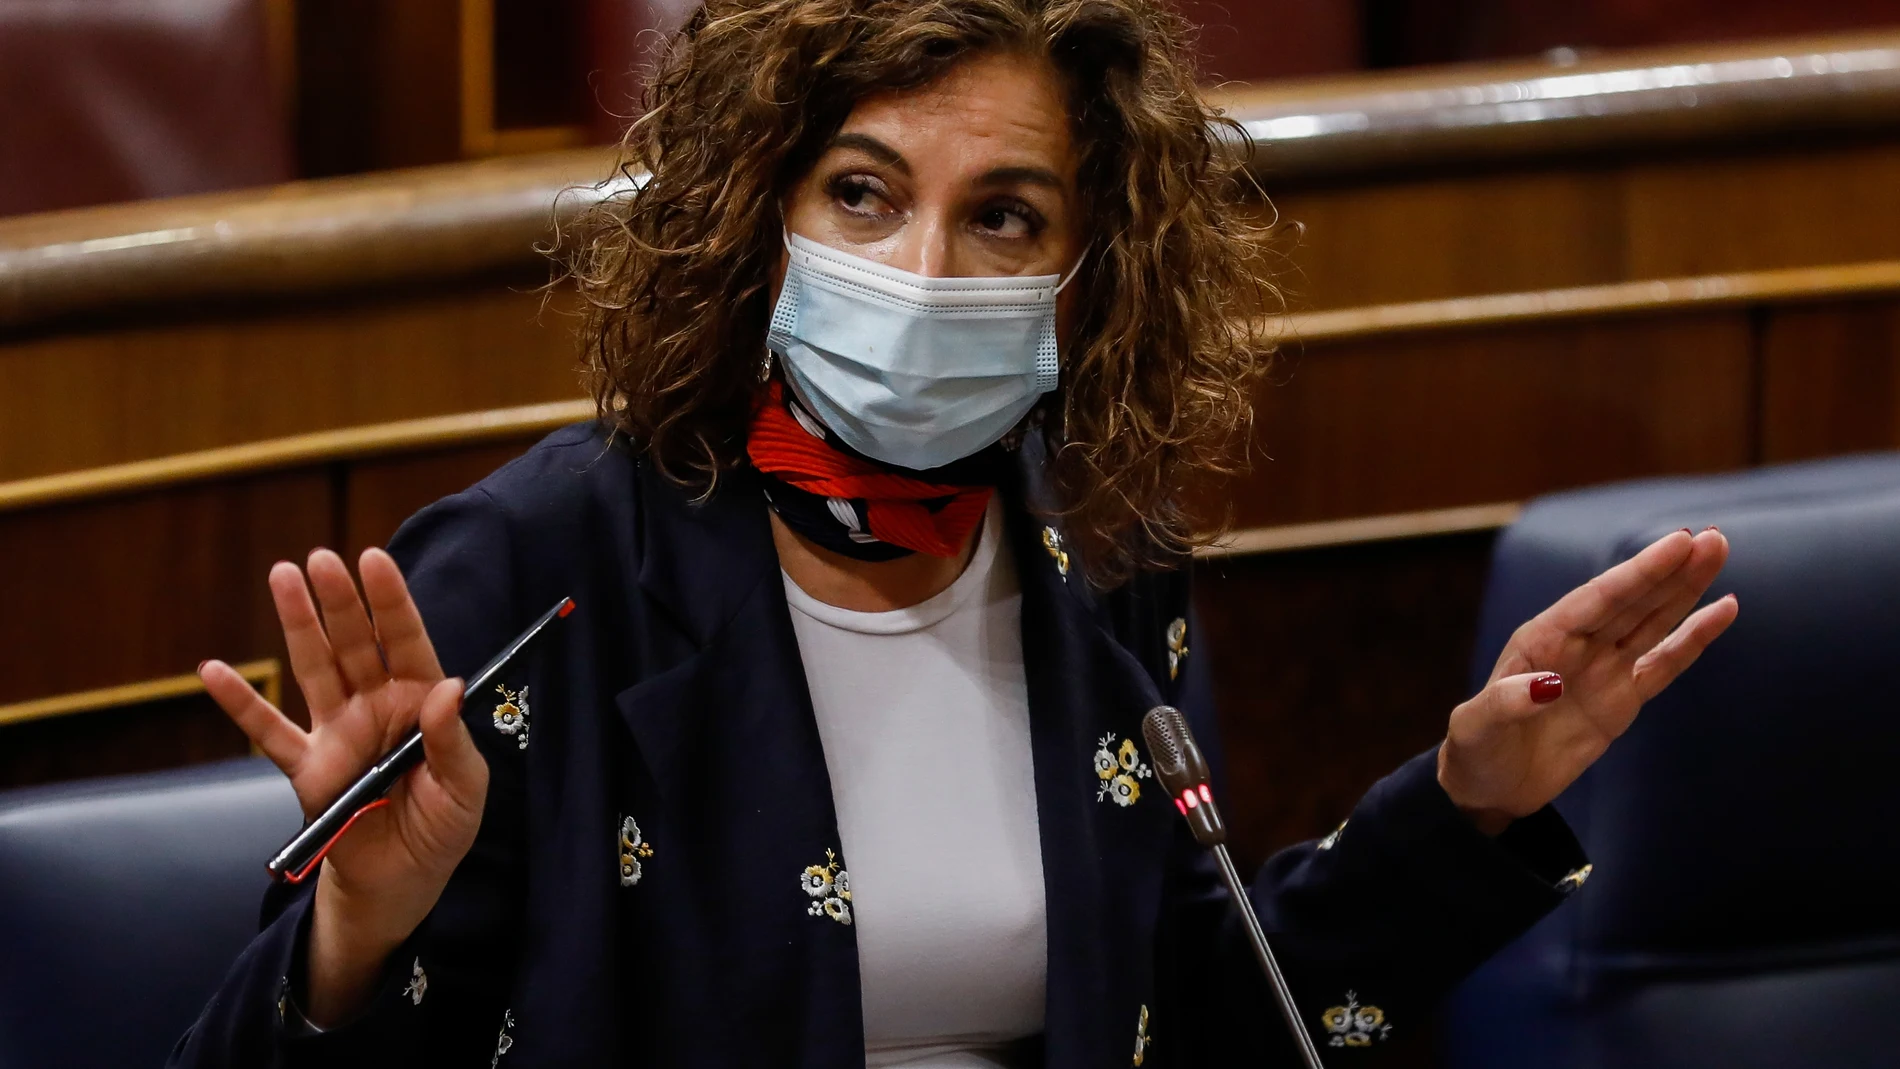 La ministra portavoz y de Hacienda, María Jesús Montero, interviene durante una sesión de control al Gobierno en el Congreso de los Diputados, en Madrid.